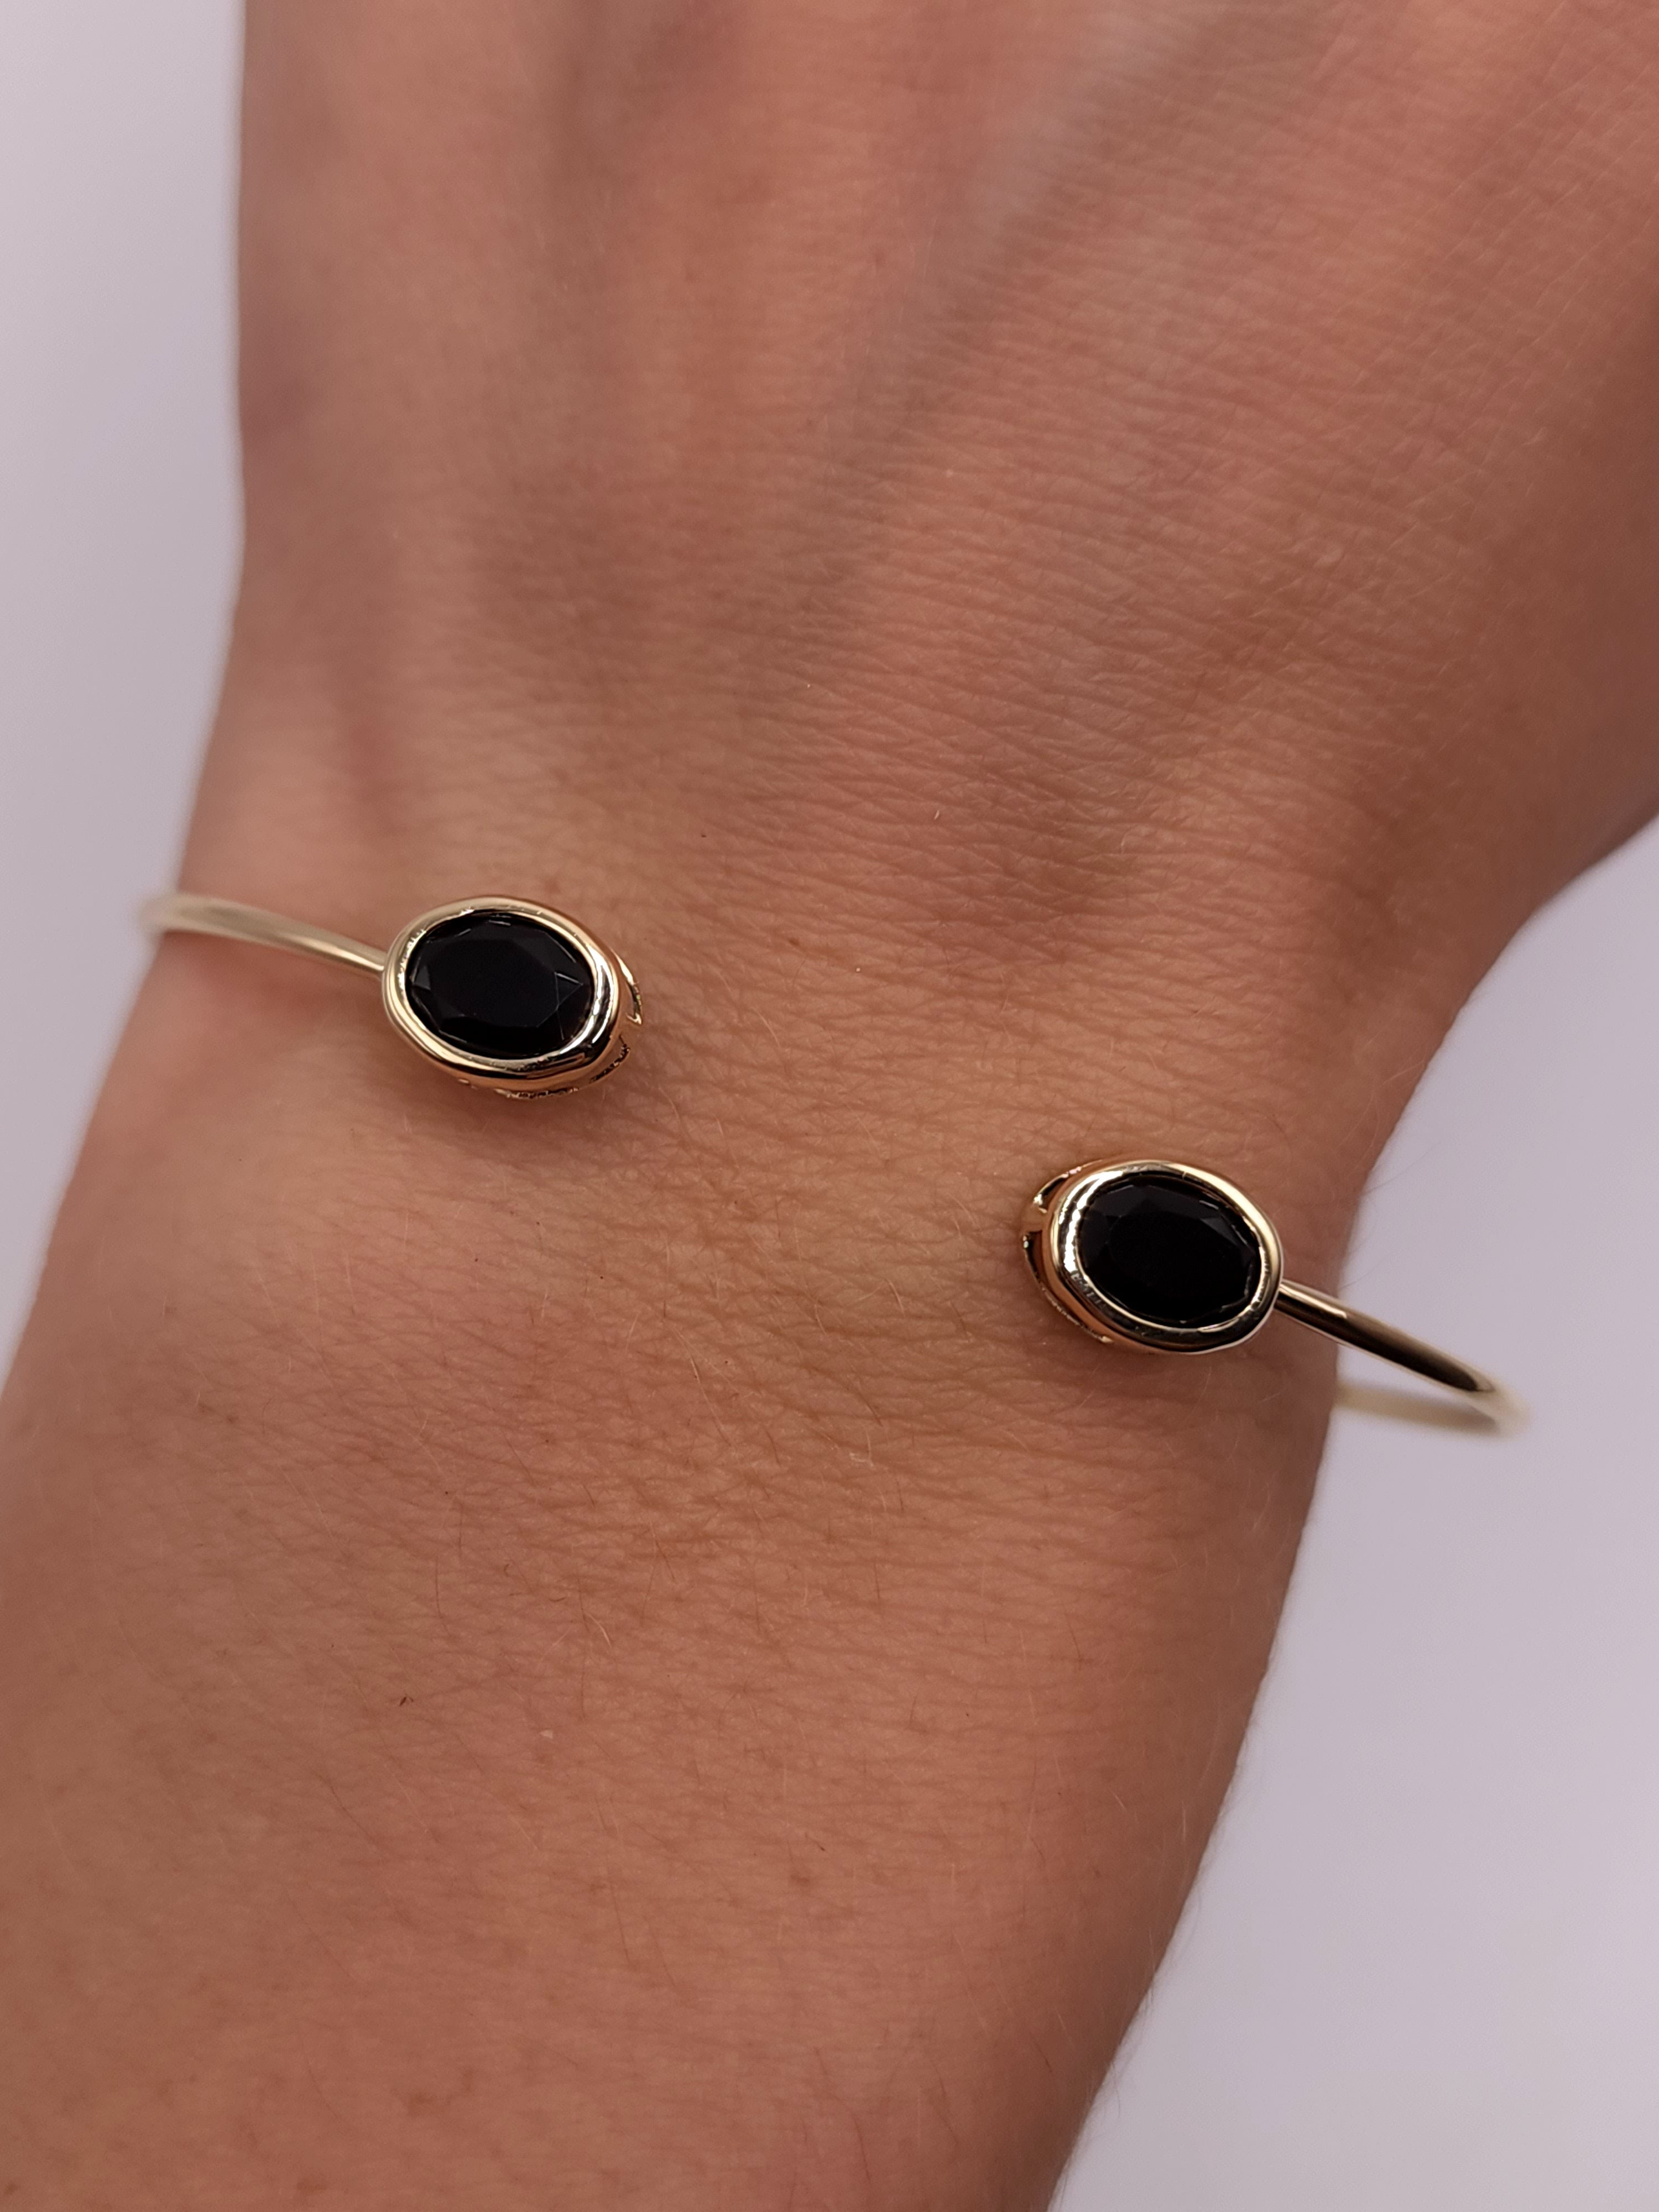 14Kt Gold Genuine Black Onyx Oval Bezel Bangle Bracelet